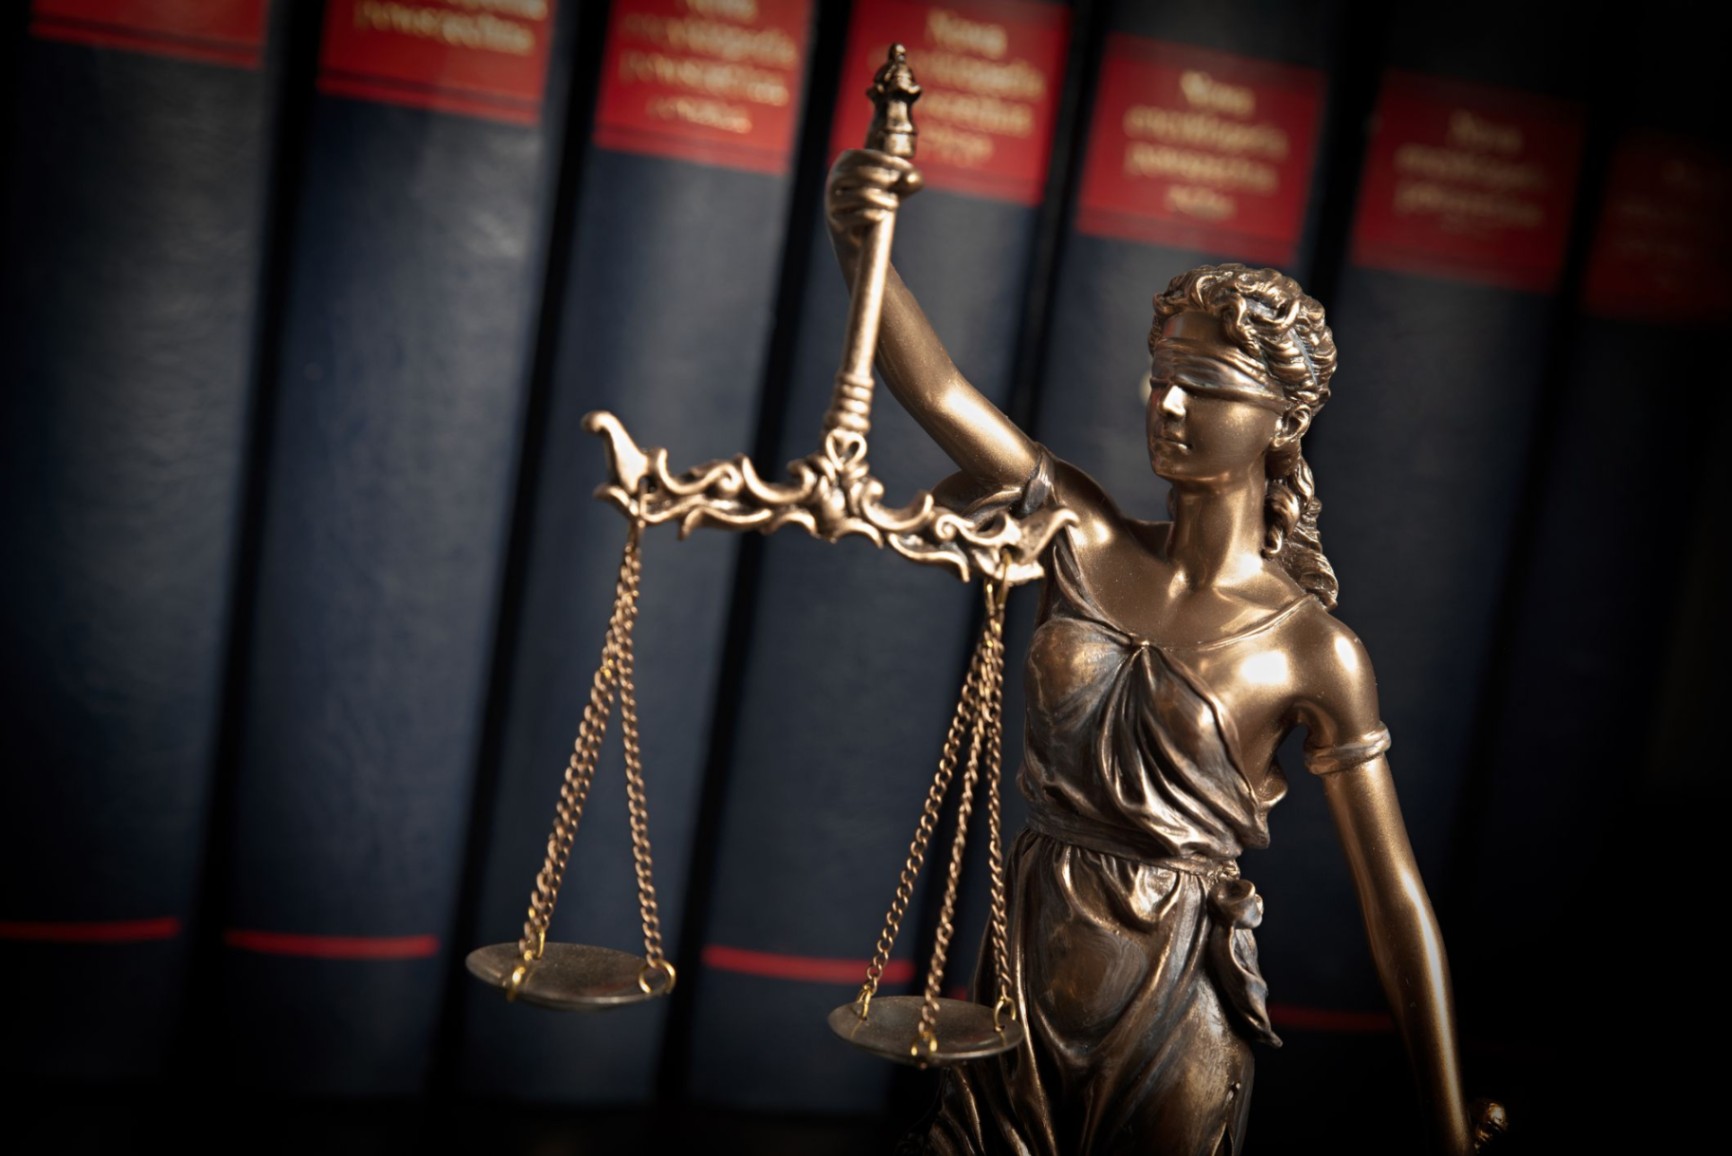 Advogados não trabalham apenas na advocacia - Conheça outras carreiras do Direito